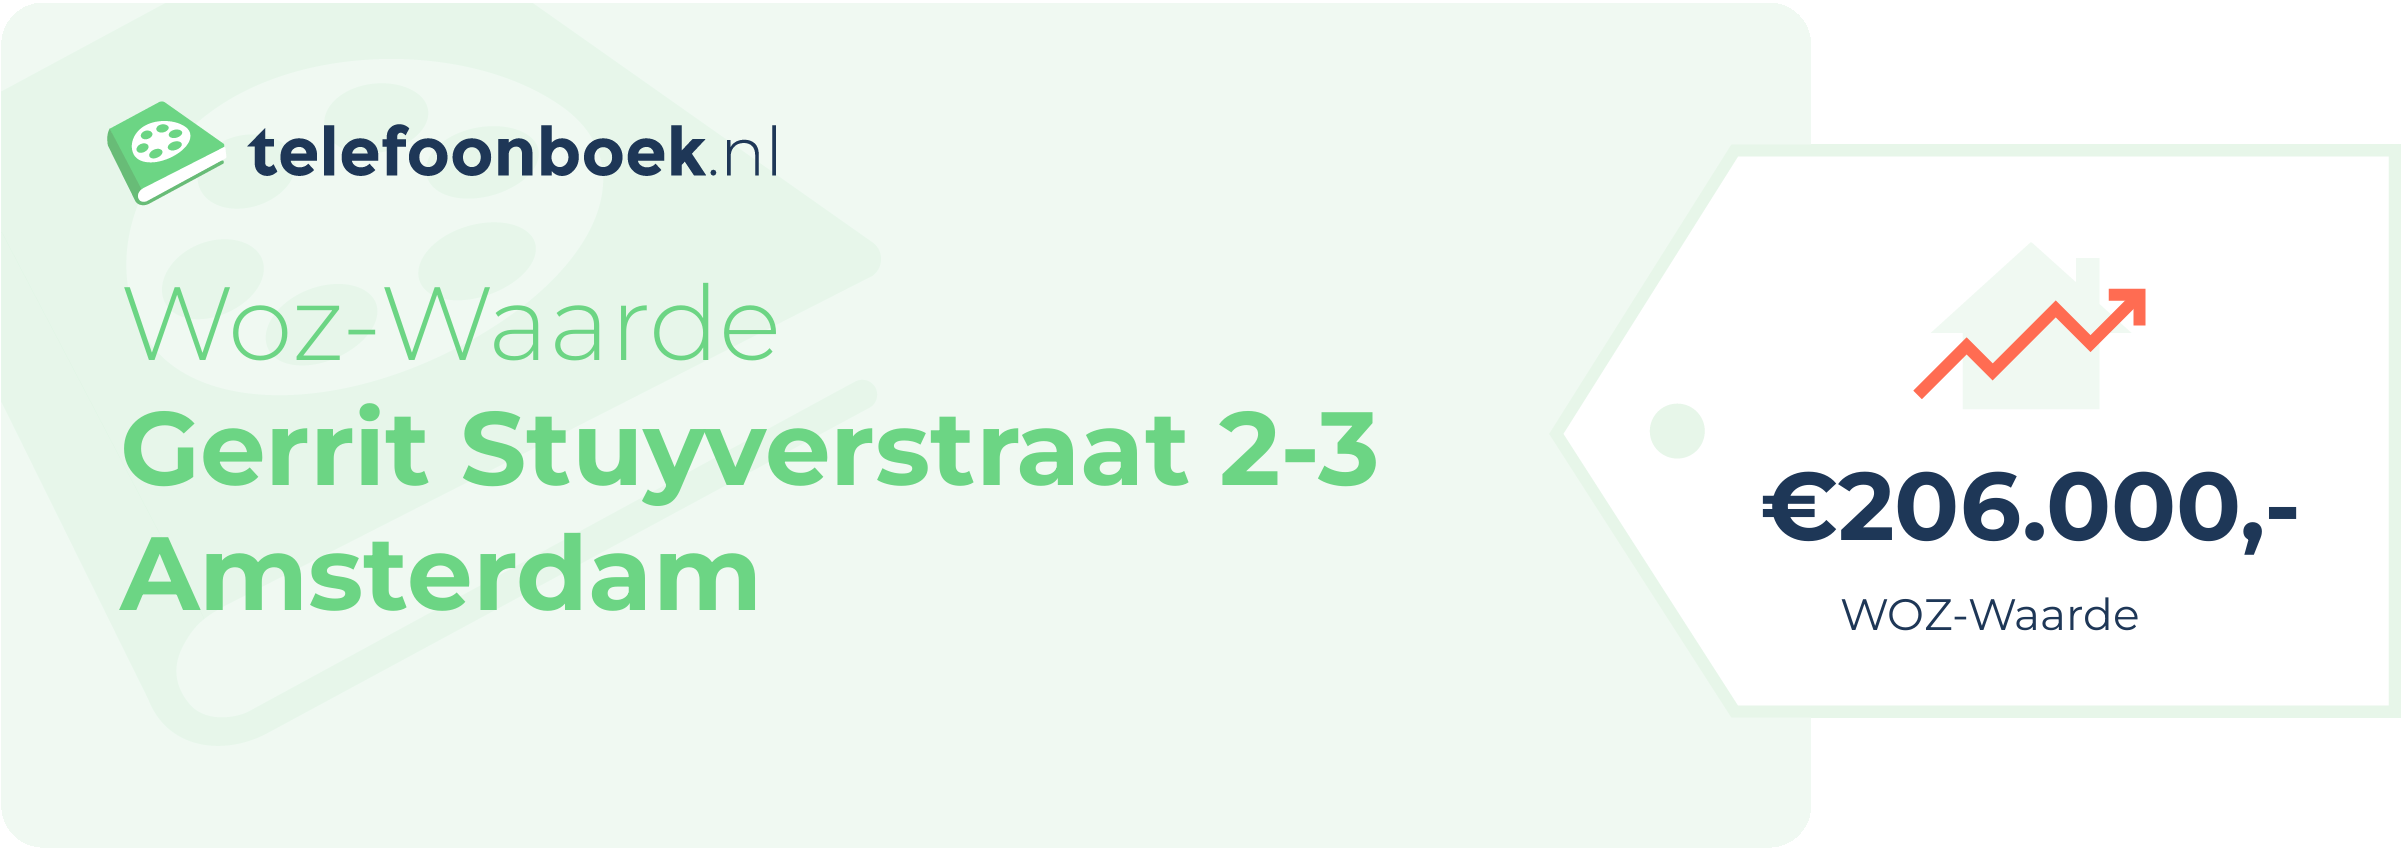 WOZ-waarde Gerrit Stuyverstraat 2-3 Amsterdam